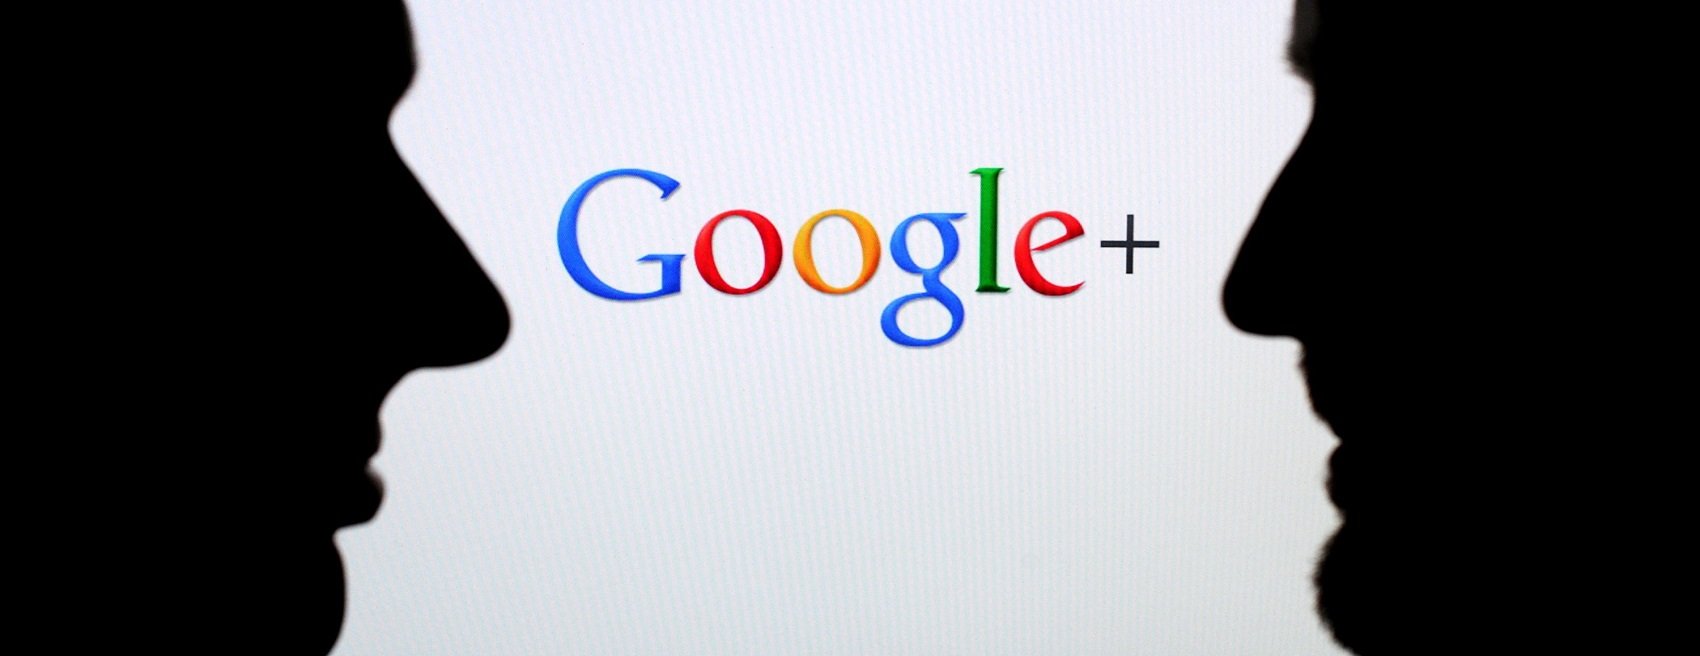 Tanca Google+ per un error de seguretat en mig milió de comptes